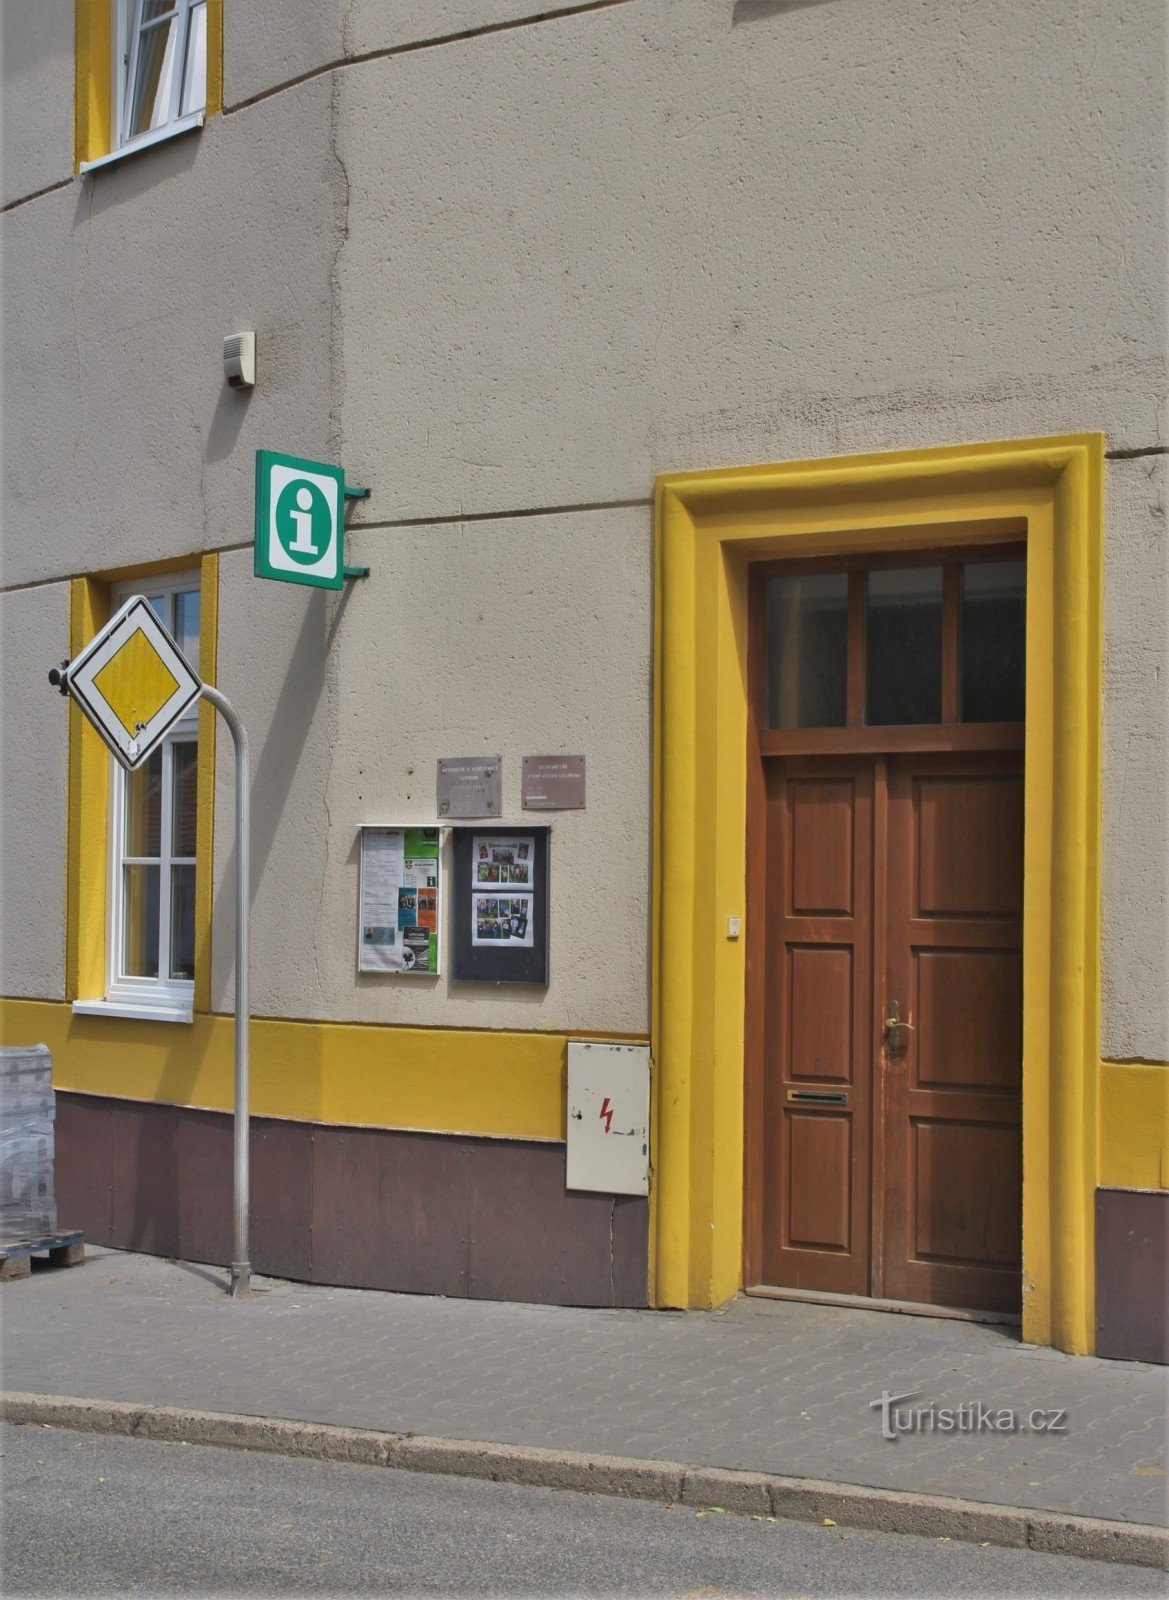 Rájec-Jestřebí - Centro de información y educación de la ciudad